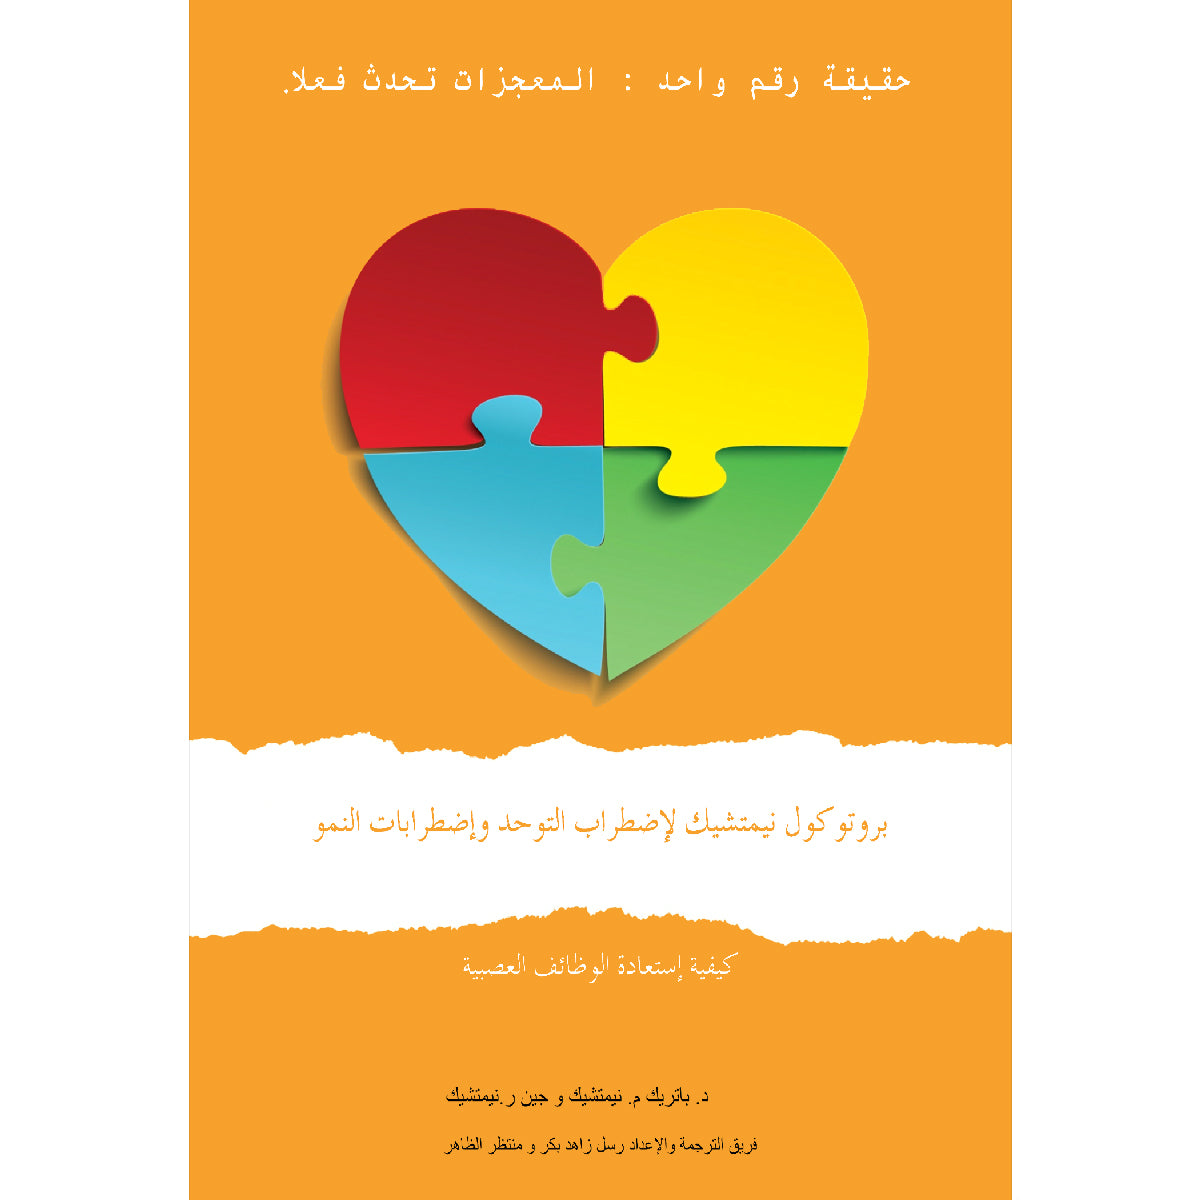 الطبعة الأولى (Arabic, iPhone/iPad/EPUB Reader) بروتوكول نيمتشك لاضطراب التوحد واضطرابات النمو